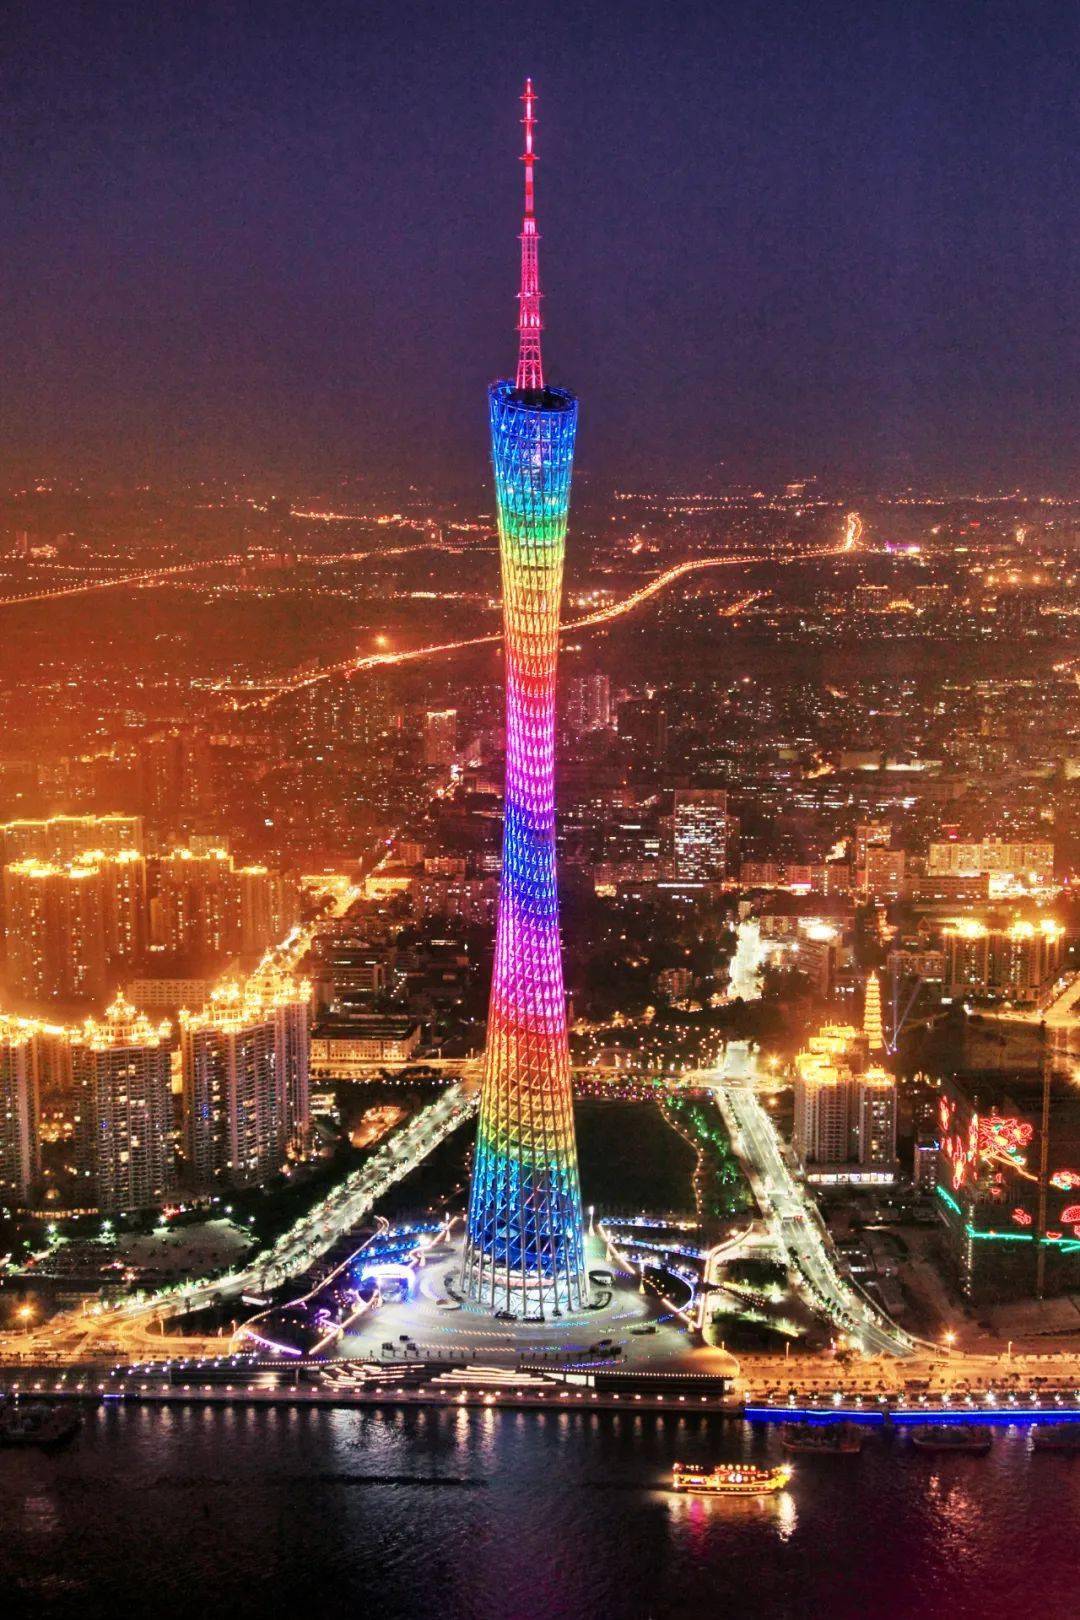 天线桅杆高146米,总高度600米; 是中国第一高塔,同时也是国家aaaa级